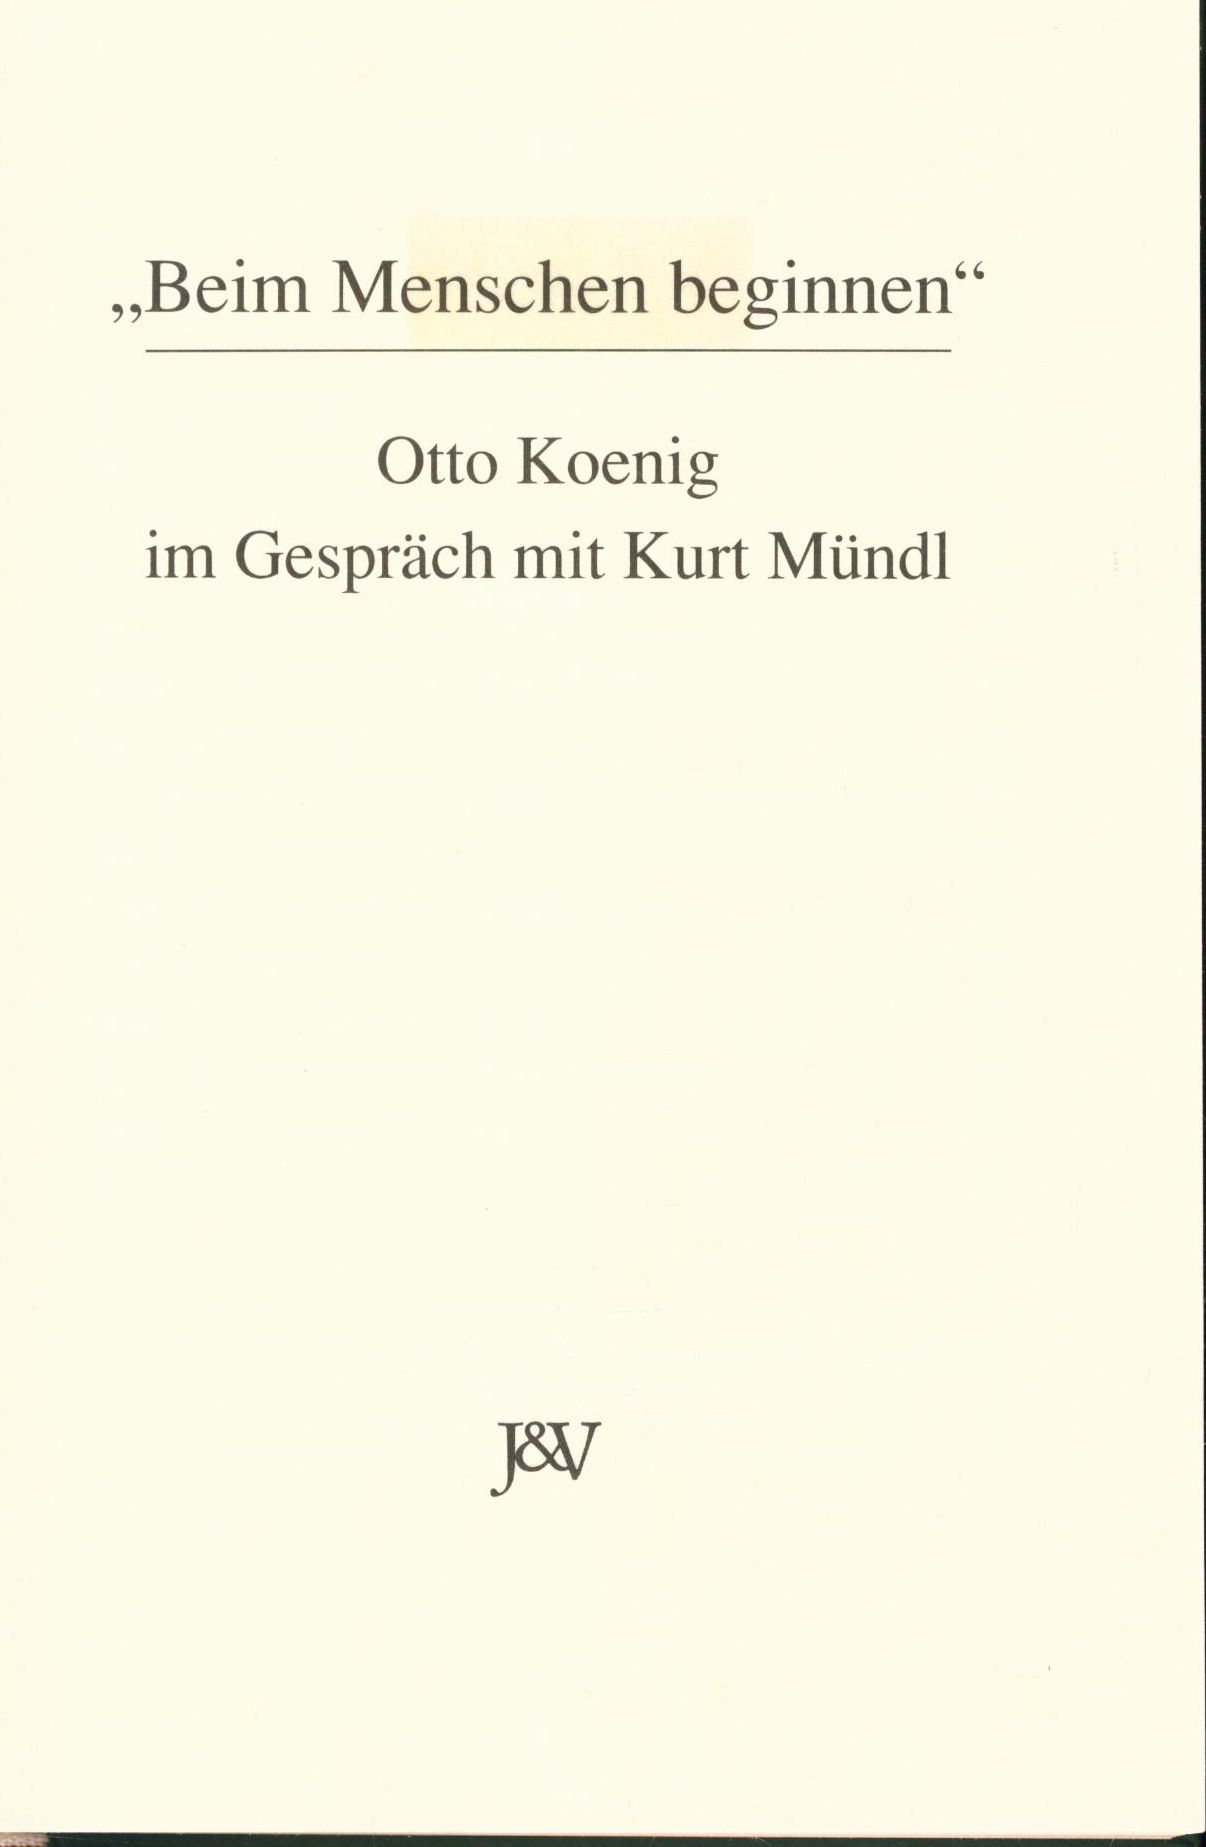 Beim Menschen beginnen : Otto Koenig im Gespräch mit Kurt Mündl - Koenig, Otto und Kurt Mündl